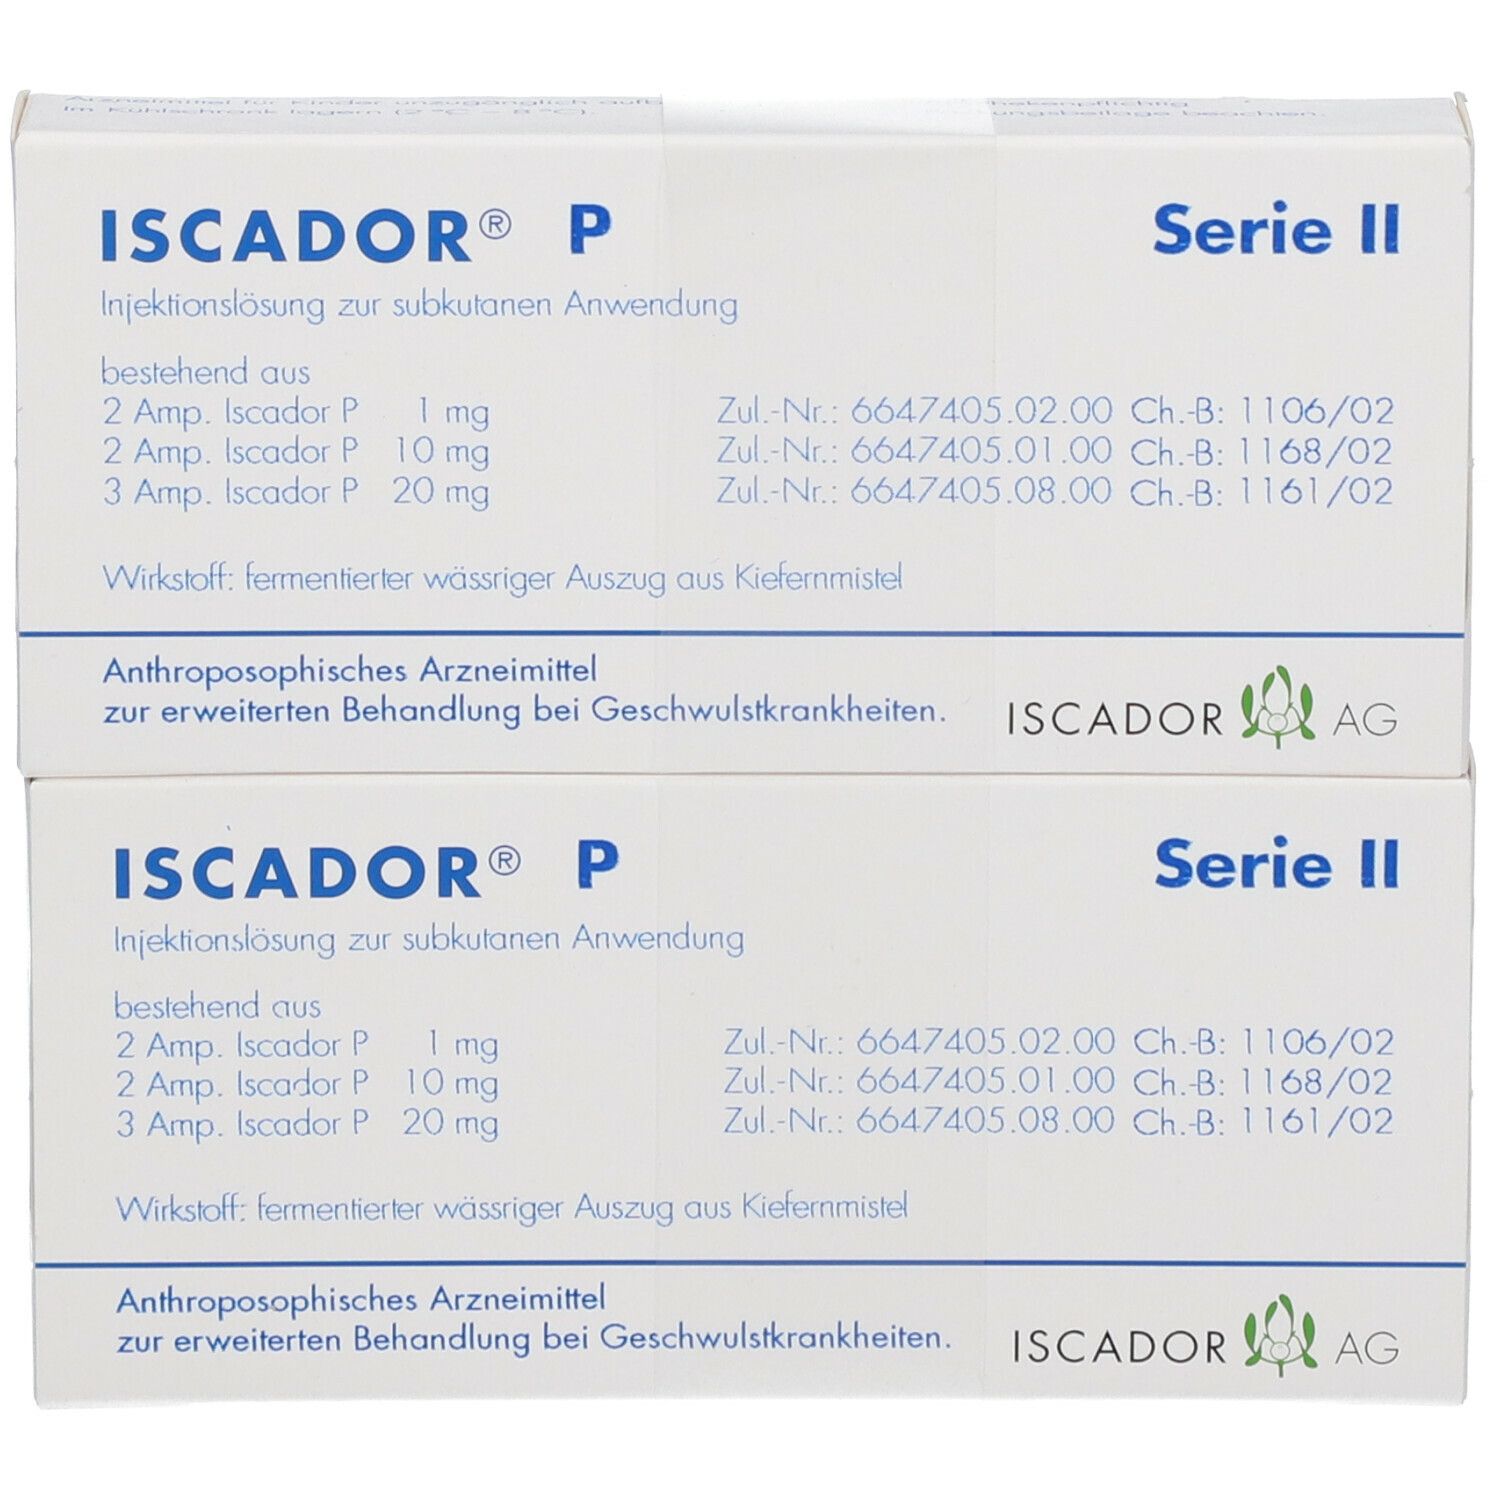 ISCADOR® P Serie II